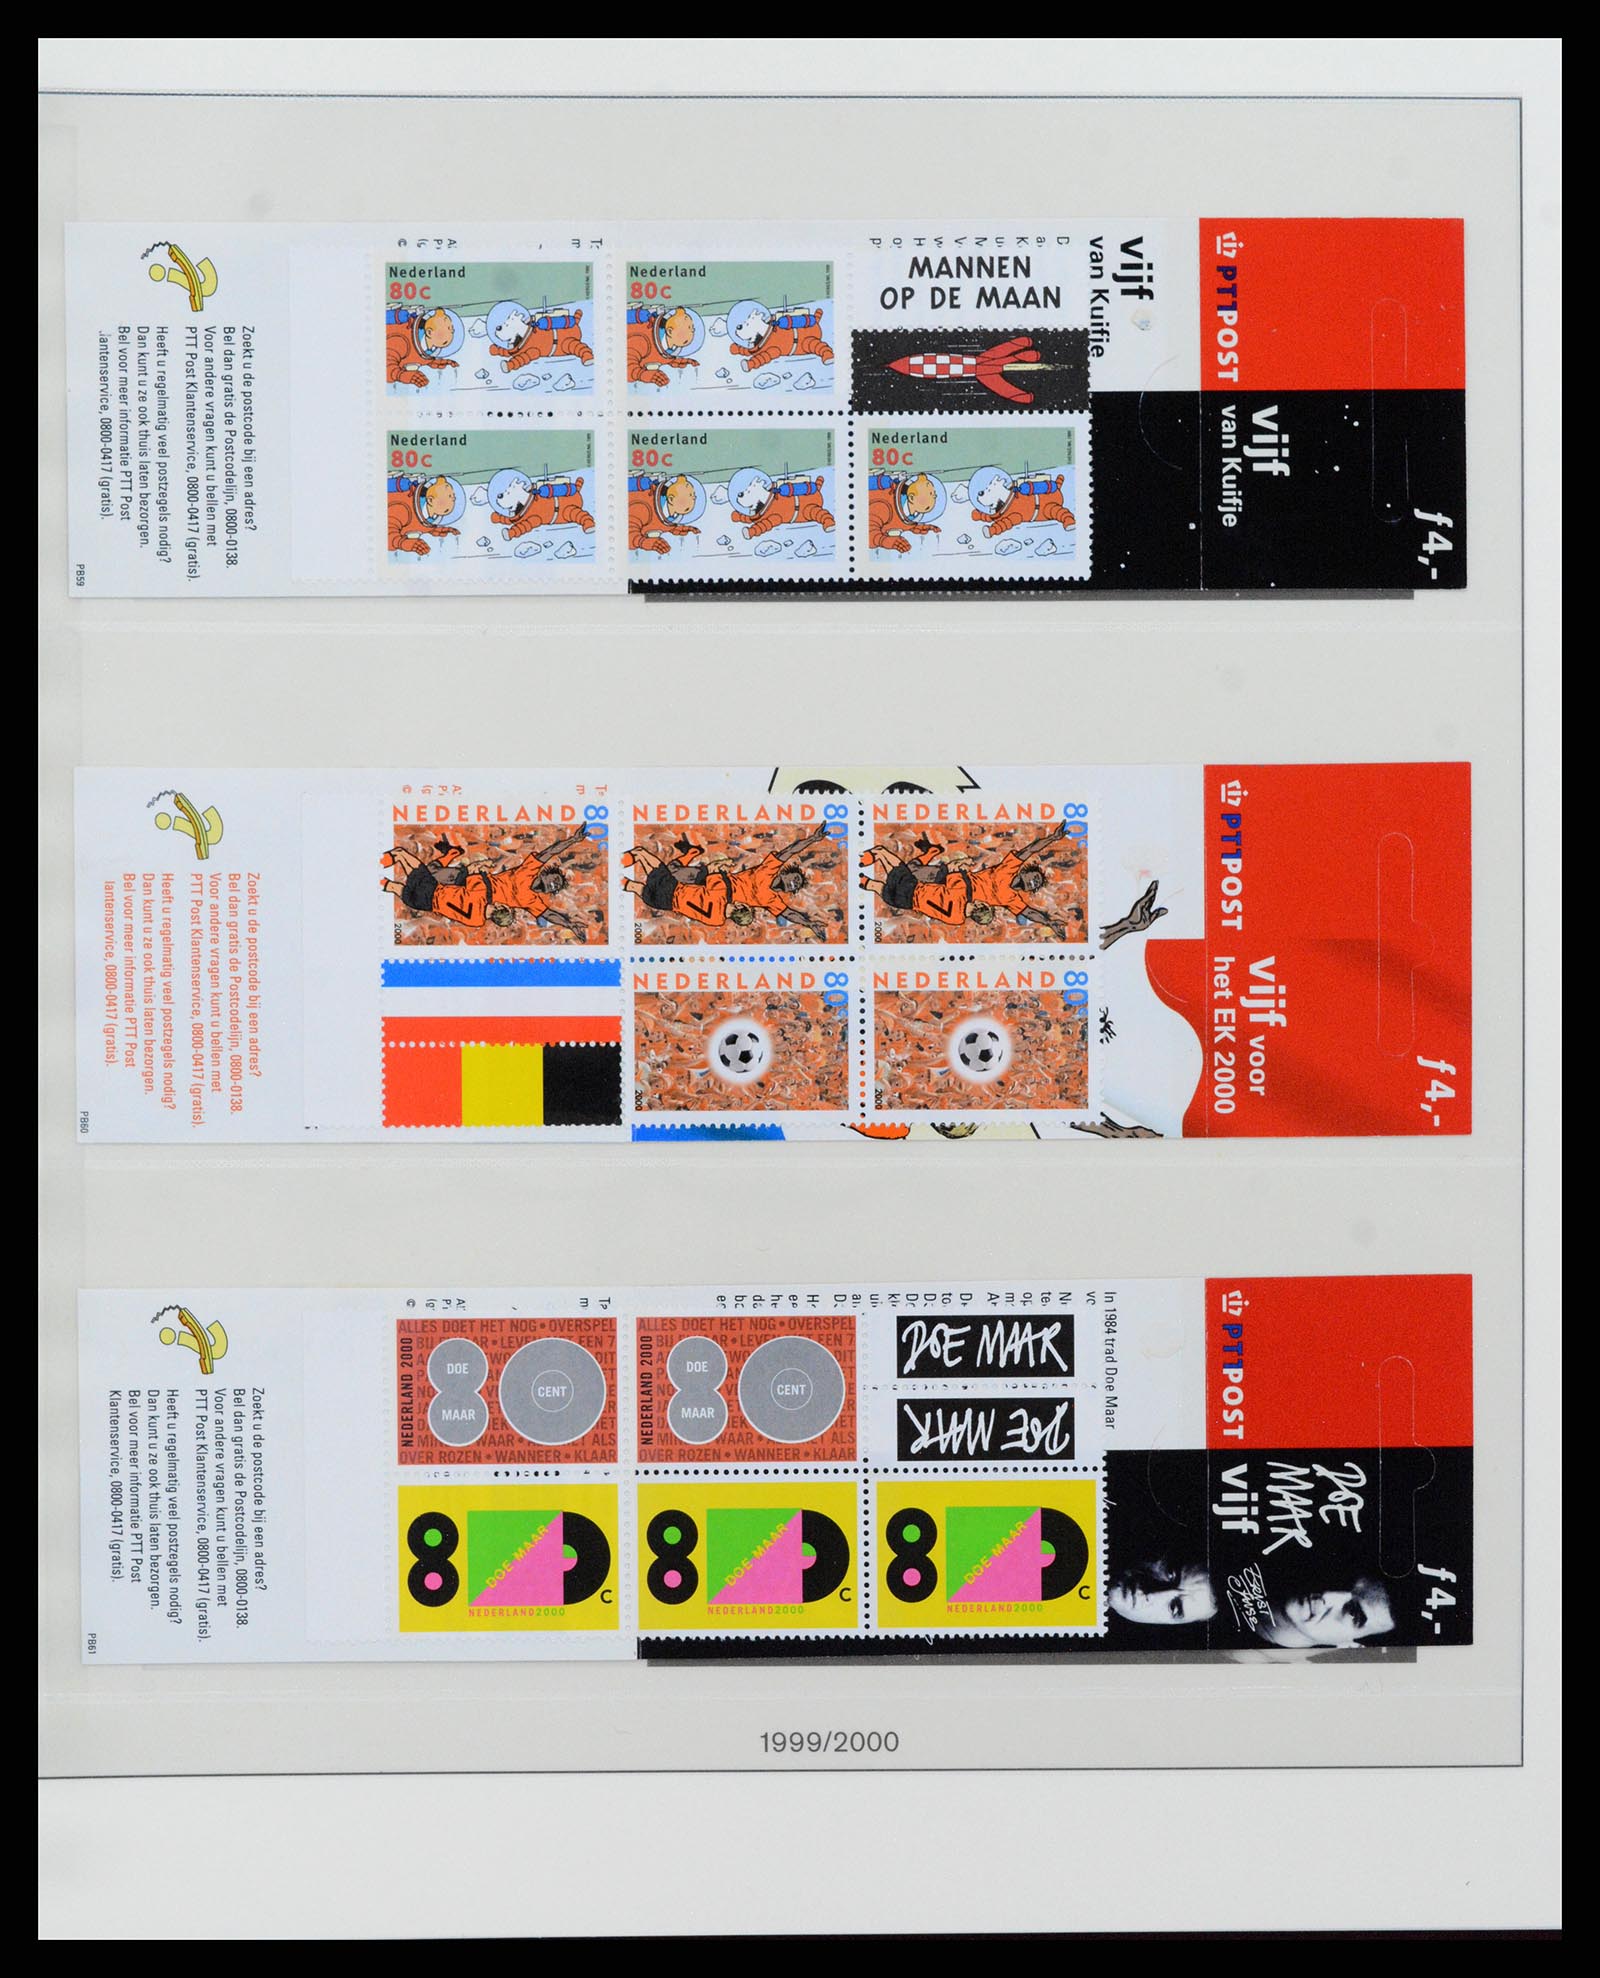 37994 033 - Stamp Collection 37994 Netherlands stampbooklets 1964-2002.